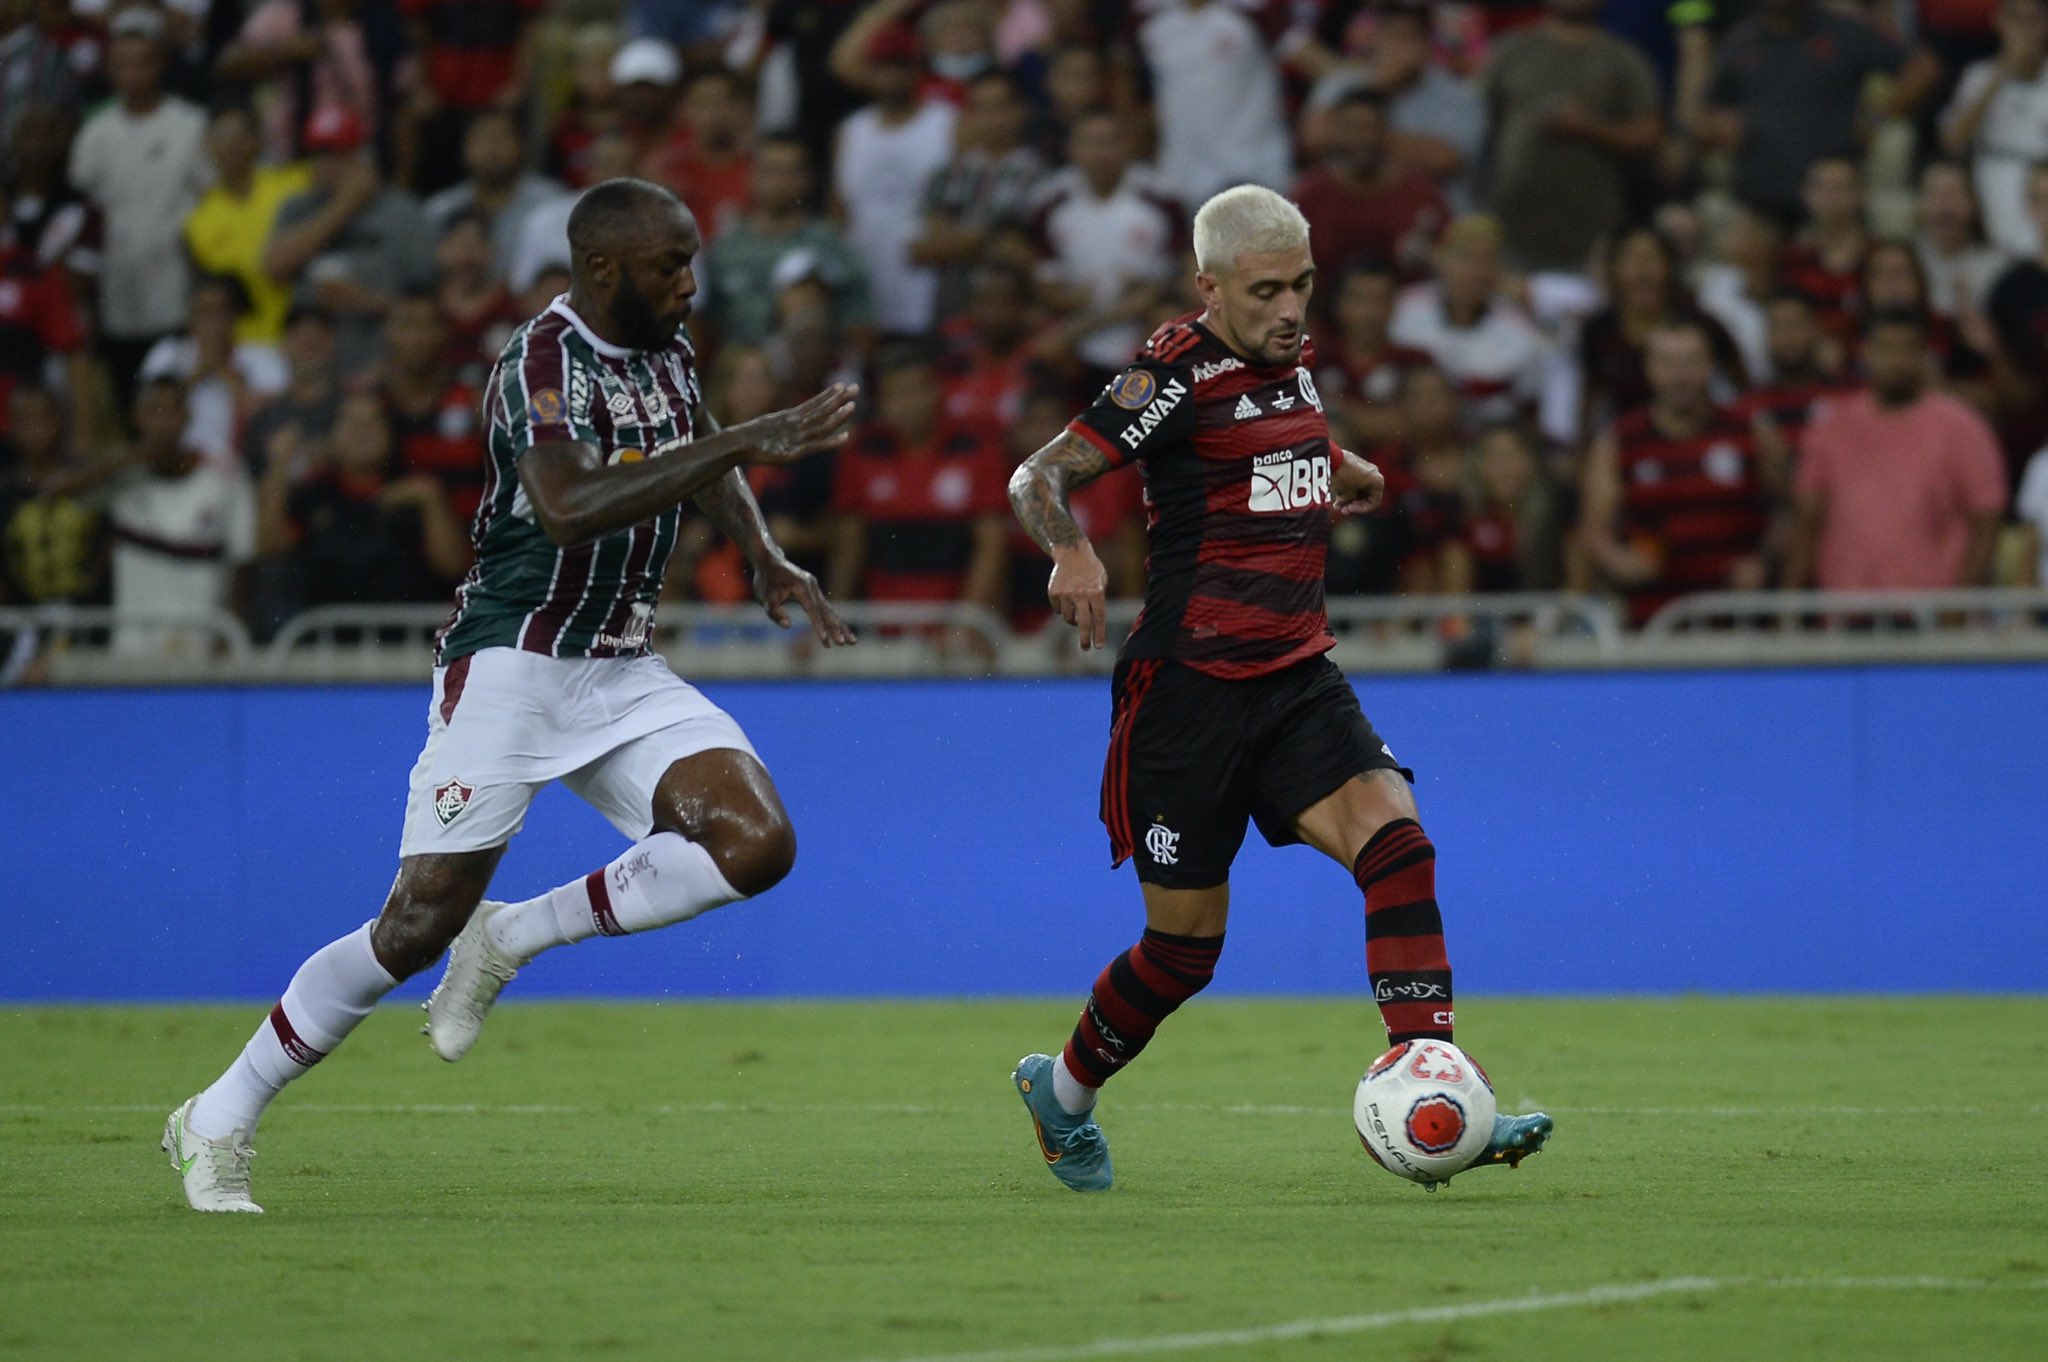 [COMENTE] Como você avalia o desempenho do Flamengo no empate com o Fluminense?